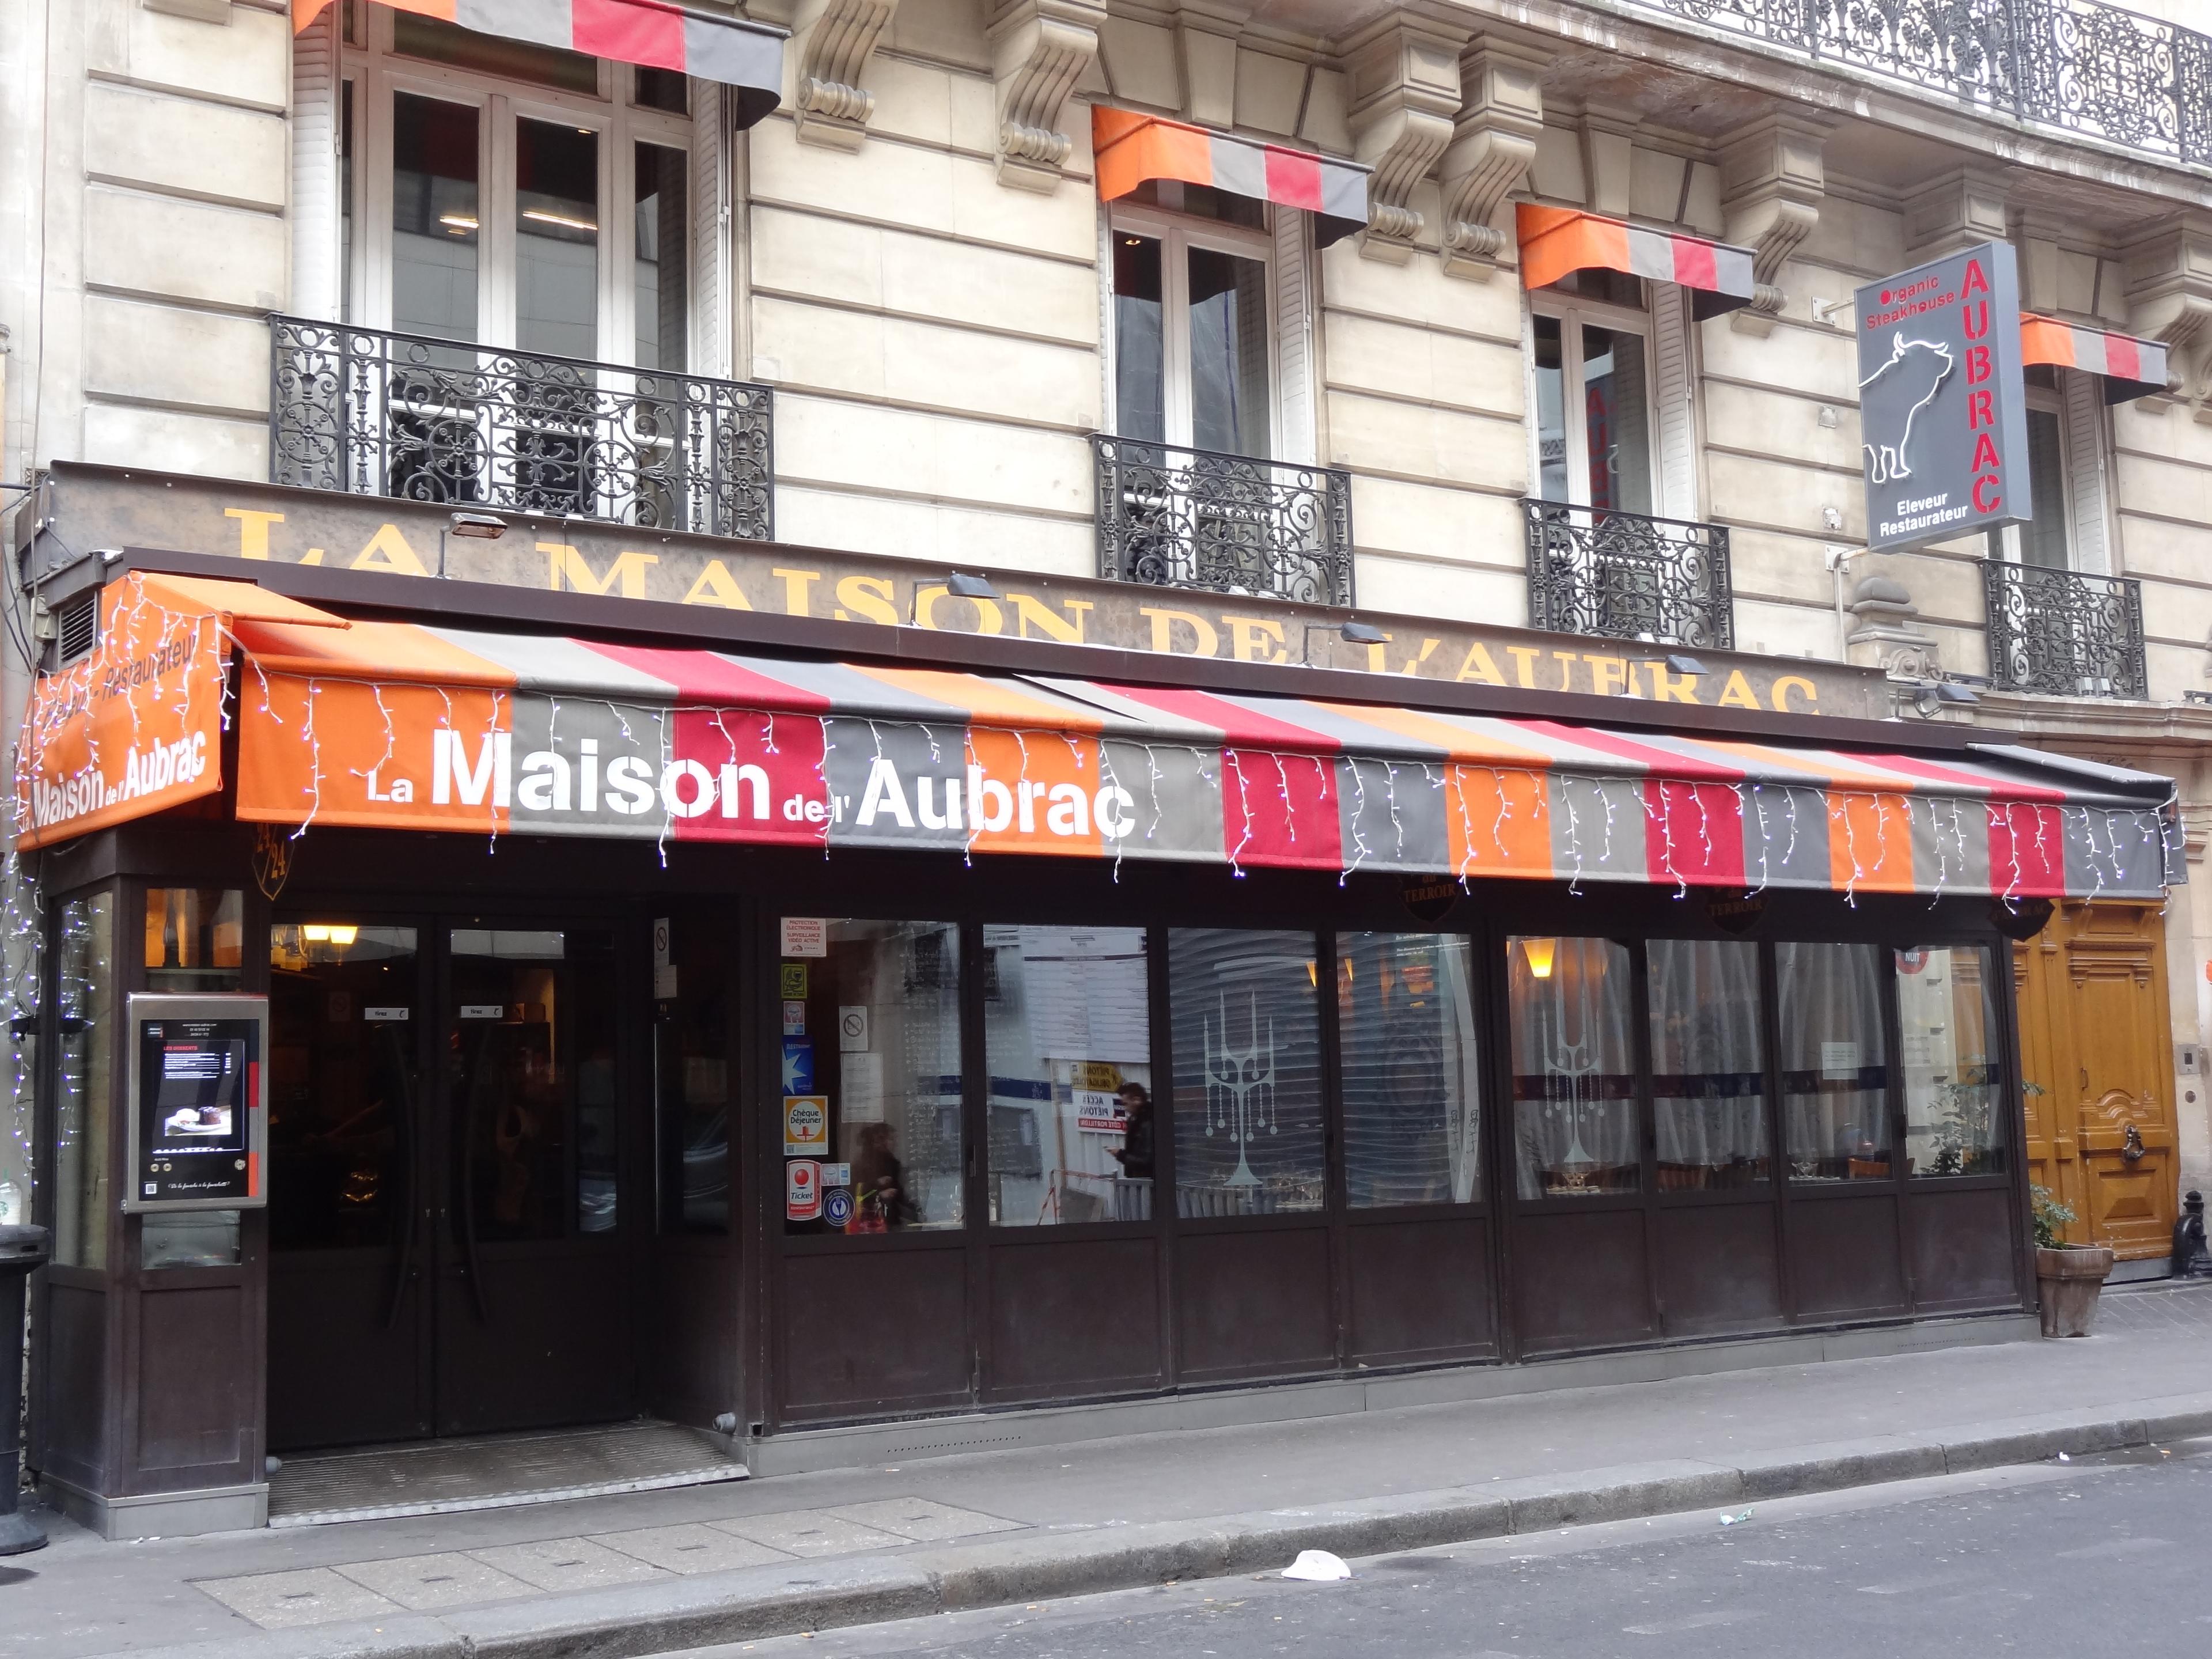 Cover image of this place La Maison de l'Aubrac